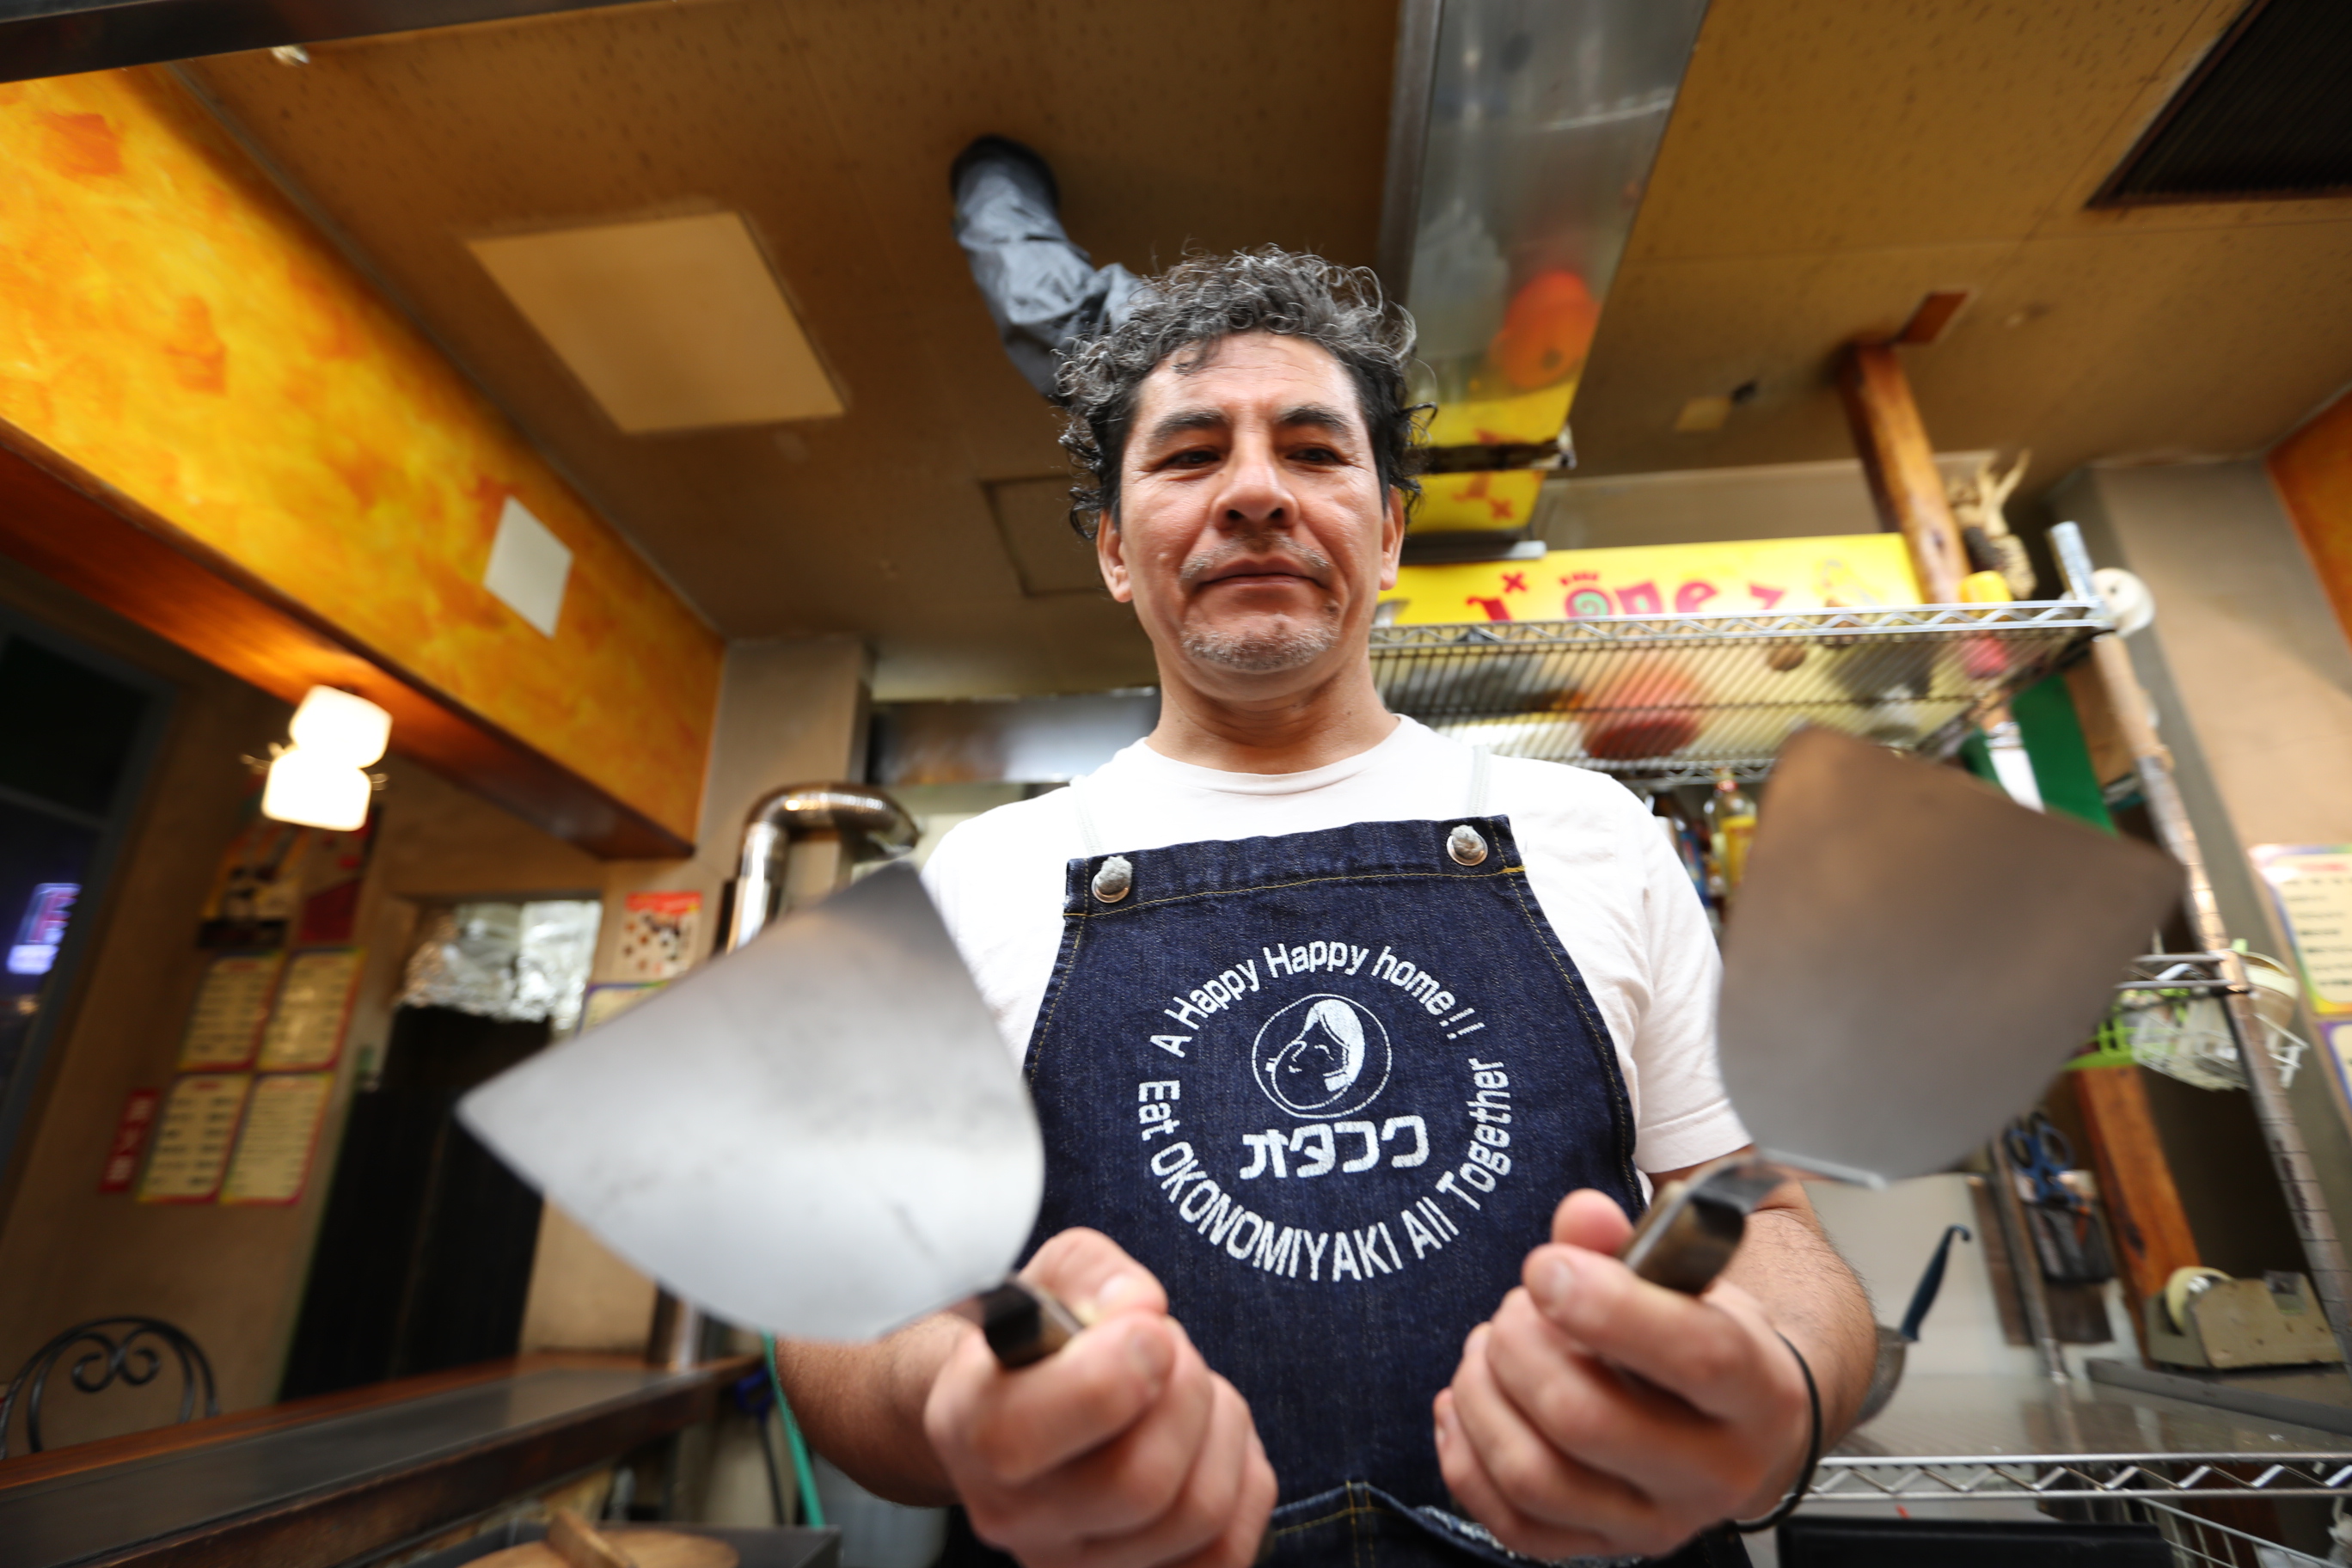 El guatemalteco Fernando López atiende su restaurante en el barrio Yocogagua, en Hiroshima, Japón. (Foto Prensa Libre: César Pérez Marroquín)

